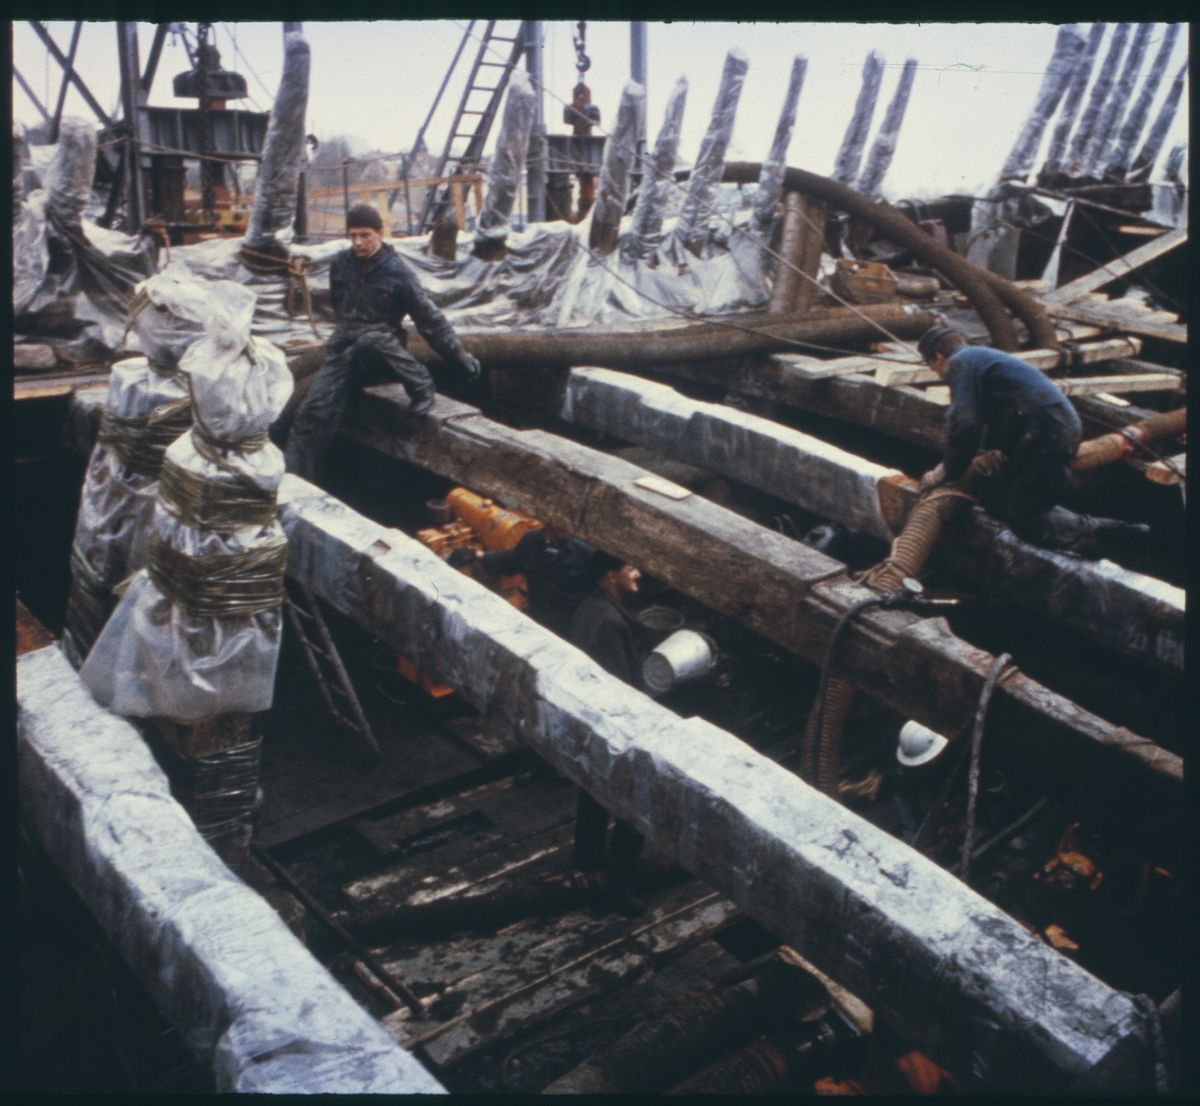 Vasas övredäcks balkar. Inplastade relingsstöttor och knektar för att skydda träet från uttorkning.